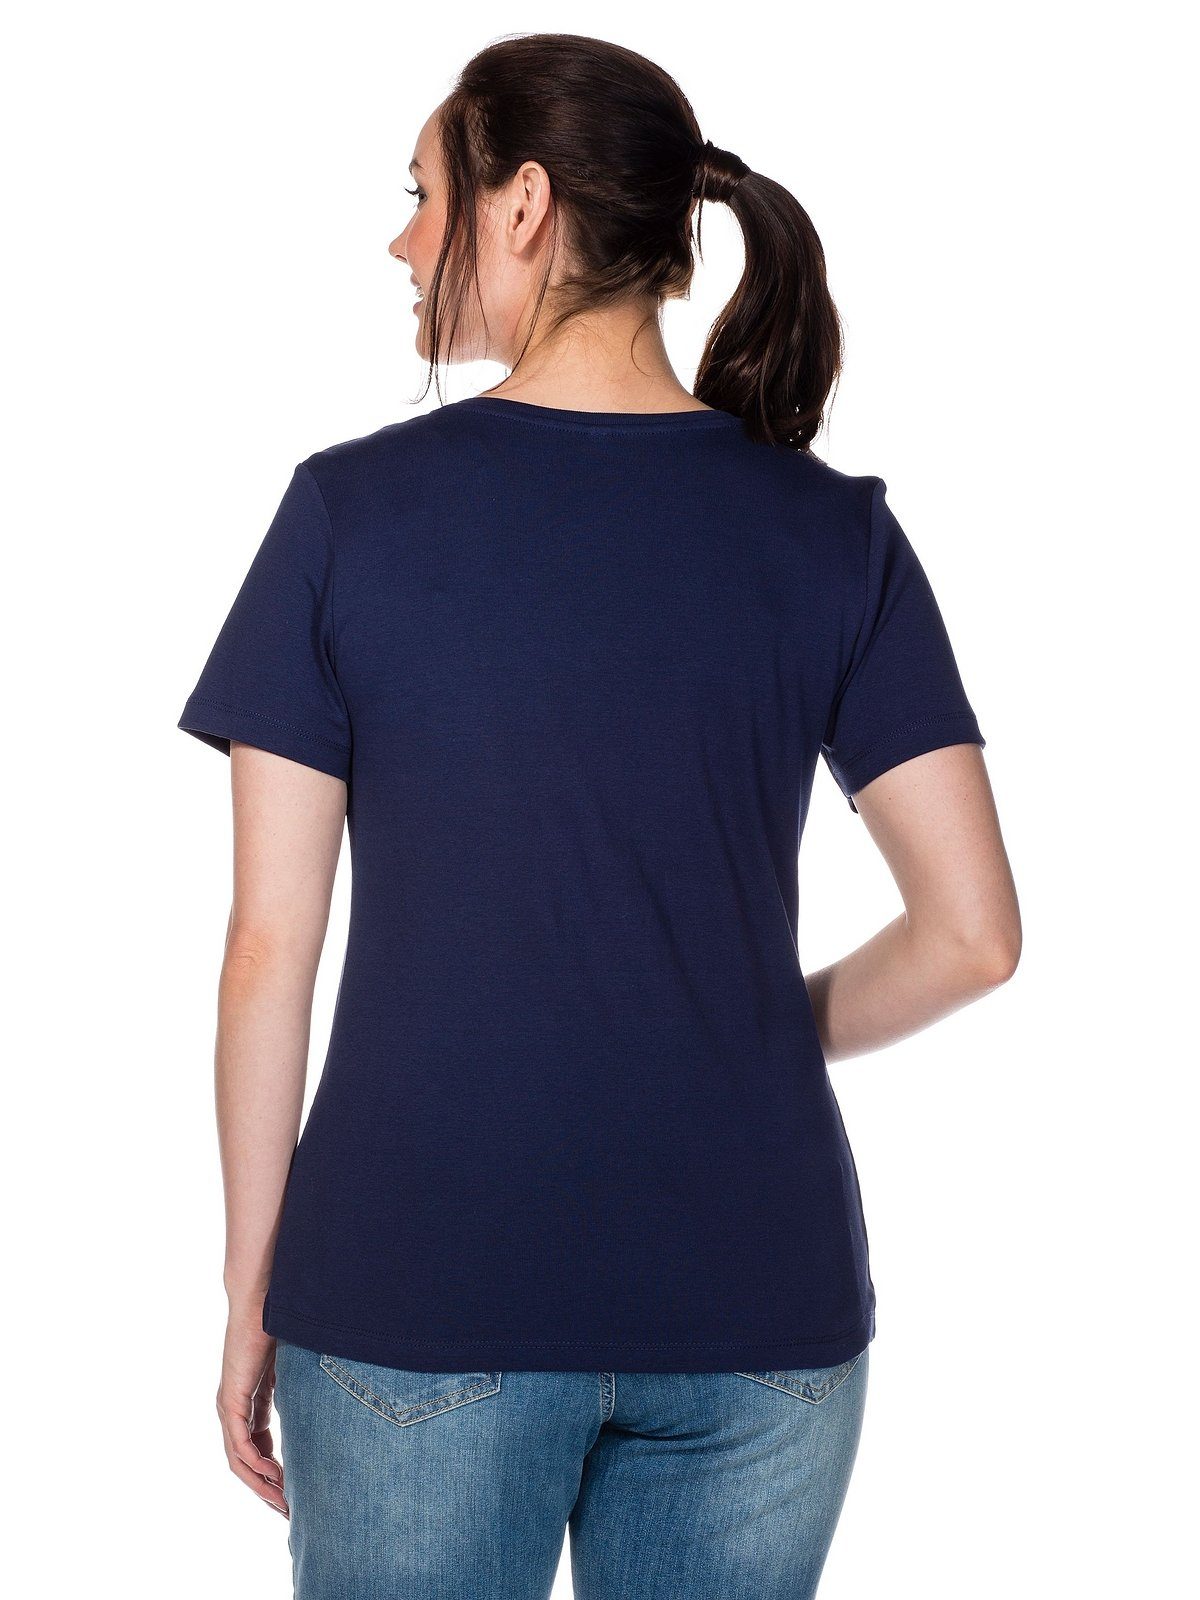 Sheego T-Shirt Große Größen marine gerippter Qualität aus fein